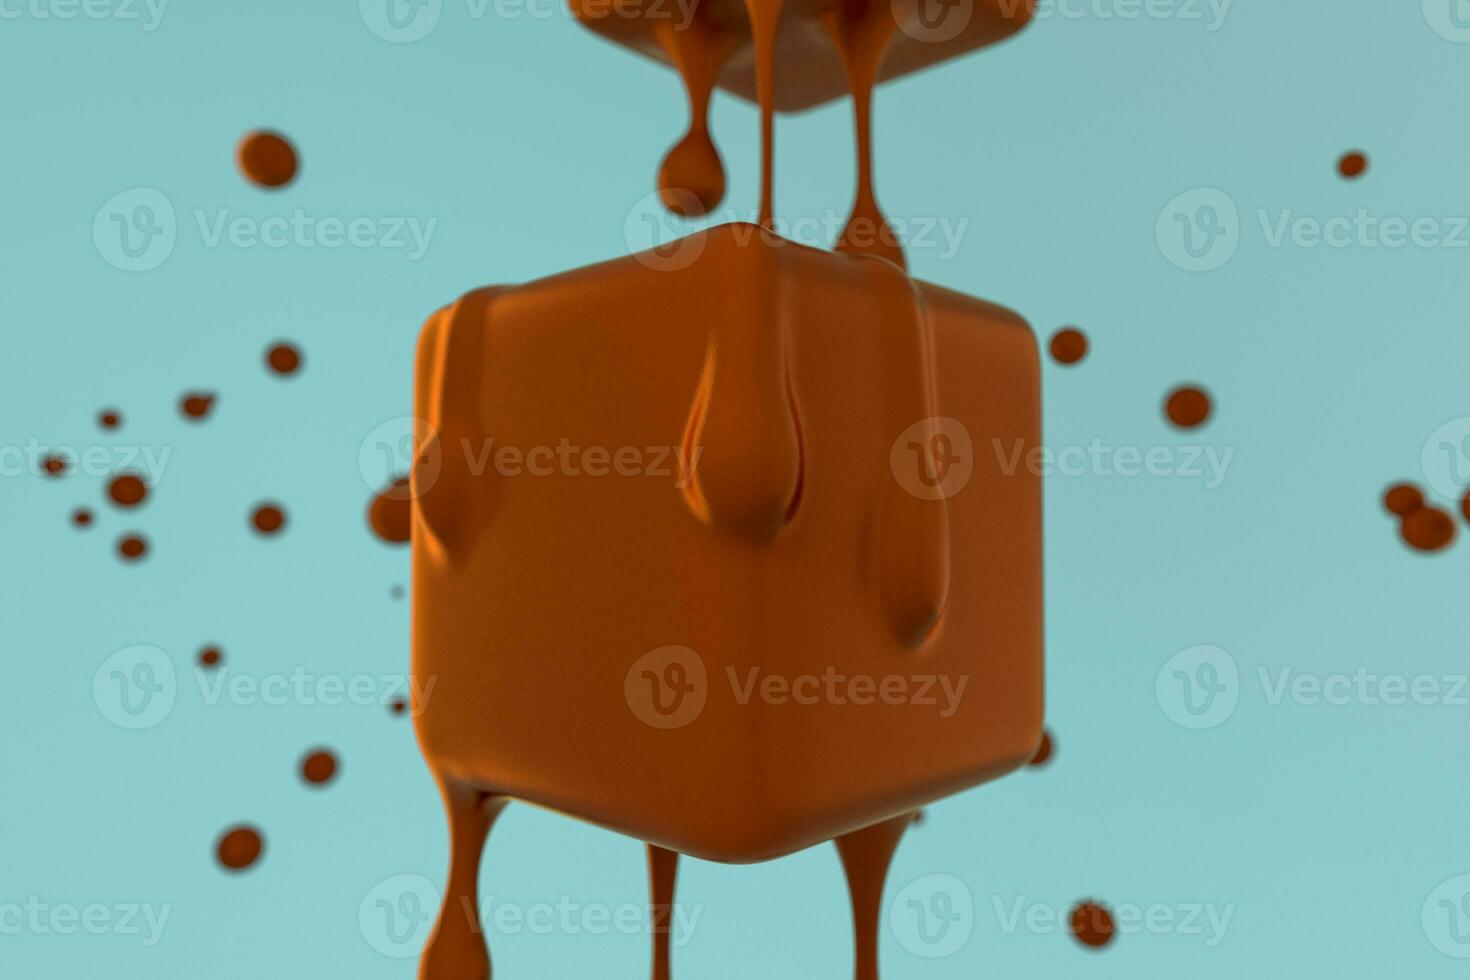 fusion Chocolat cube avec liquide laissez tomber détails, 3d le rendu photo